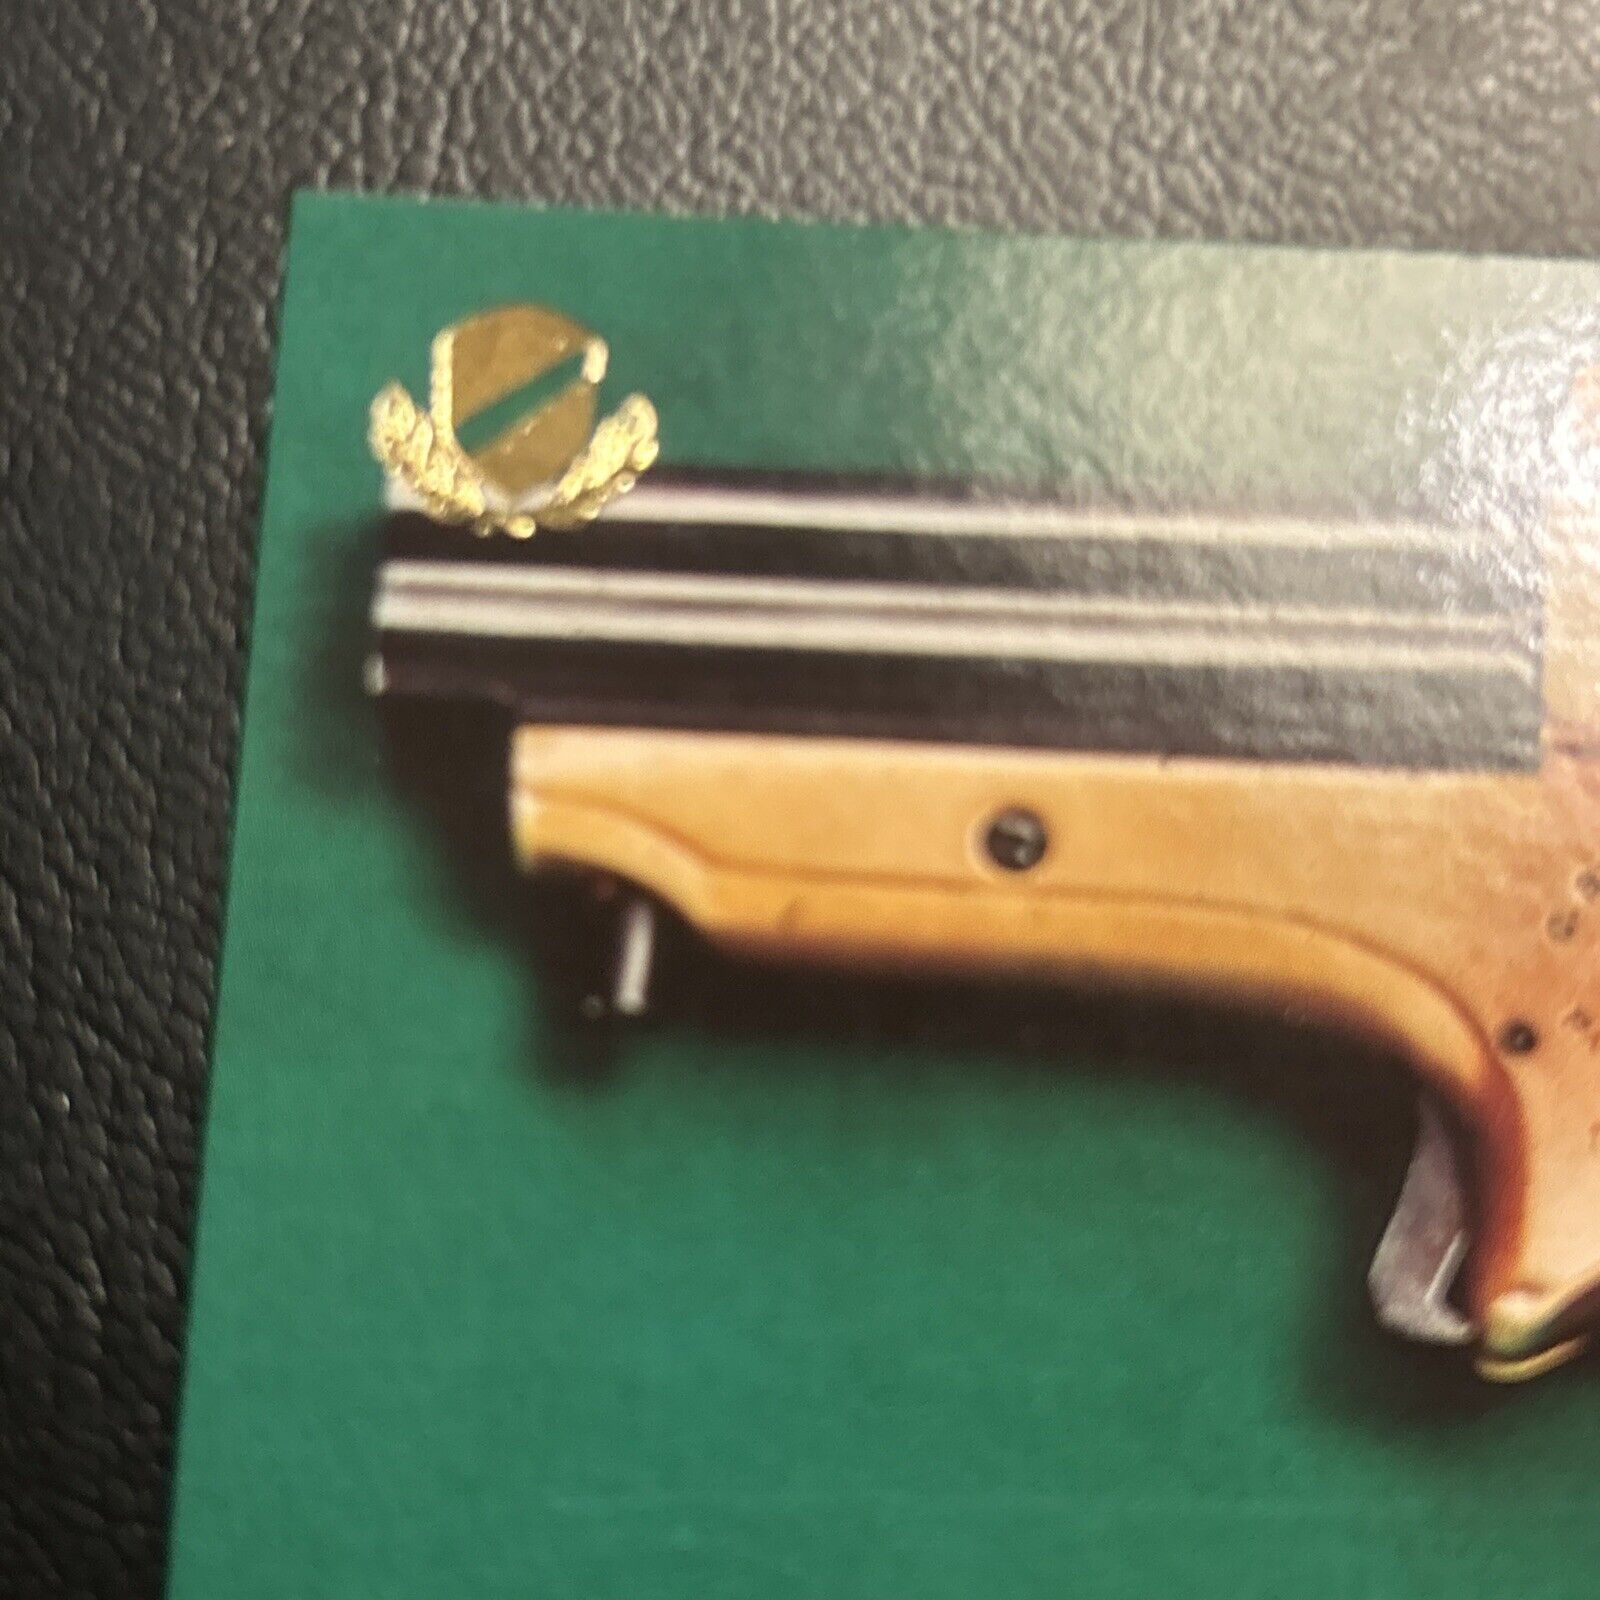 Jb2 Great Guns 1993 Gold Shield #80 Sharps, Pepperbox, Pistol, 22 Caliber